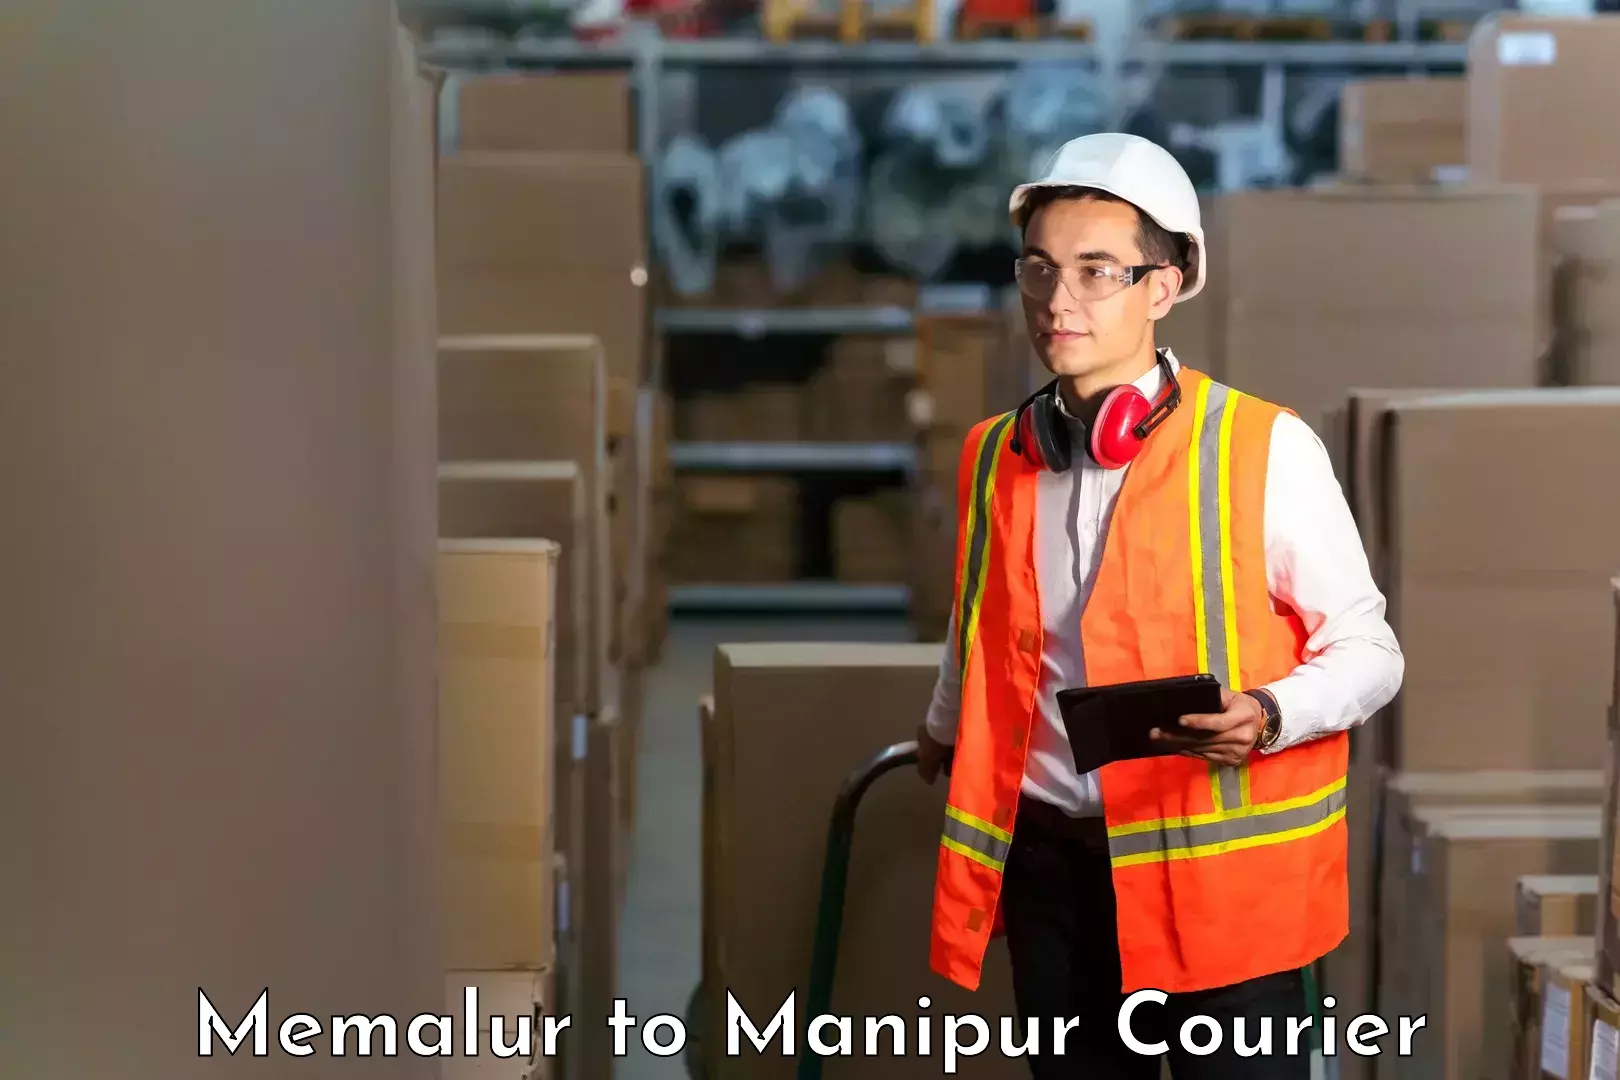 Courier service comparison Memalur to Chandel